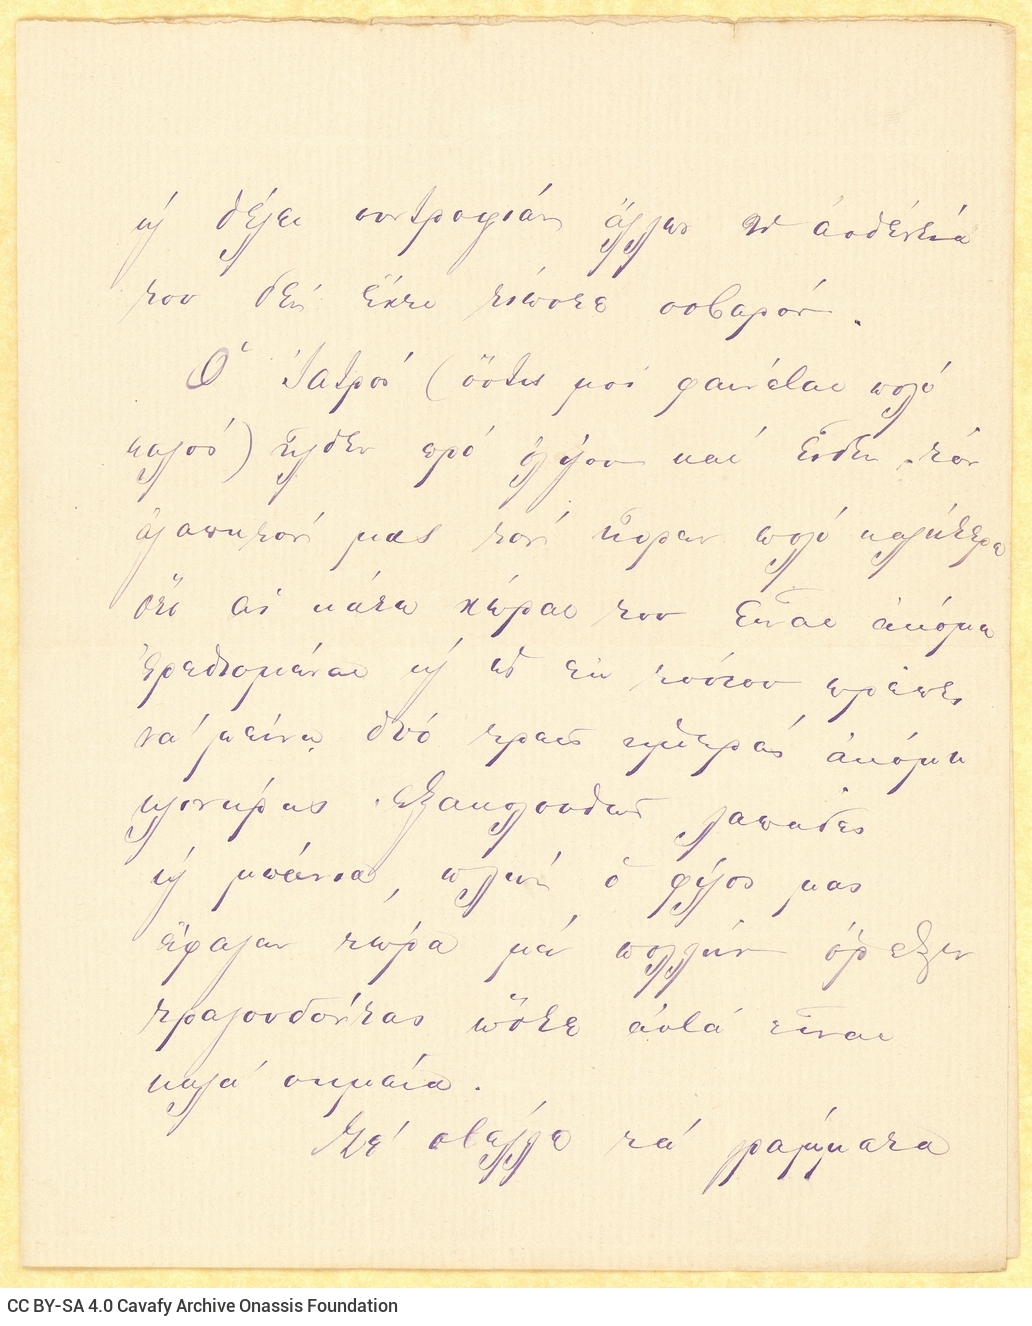 Χειρόγραφη επιστολή του Αλέξανδρου Καβάφη προς τη μητέρα του Χαρίκλ